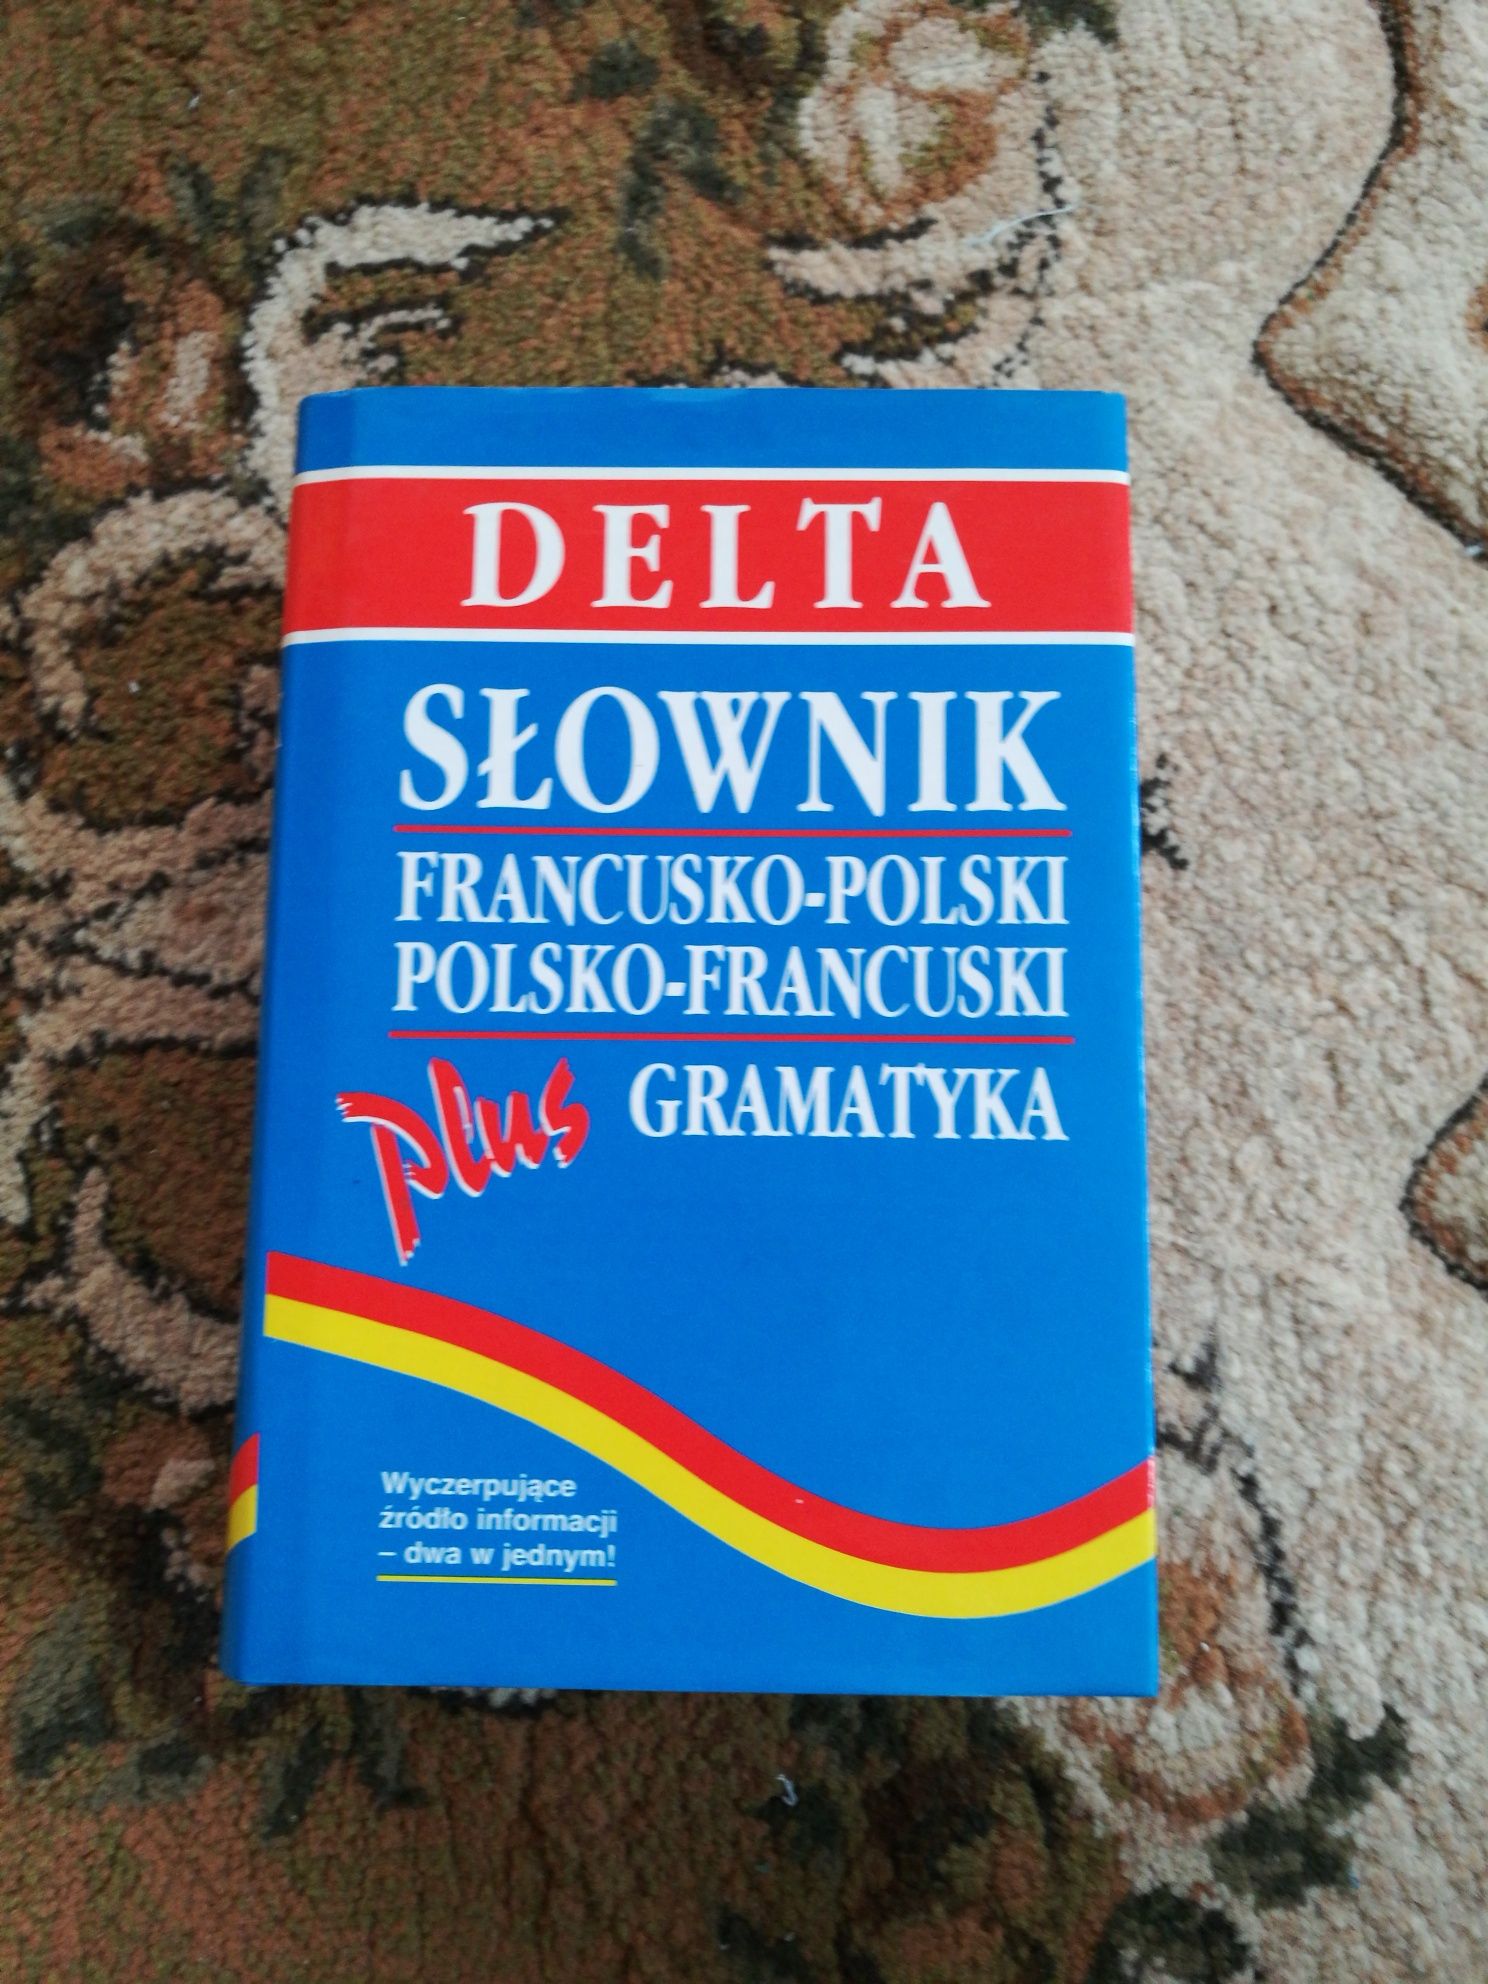 Delta słownik francusko-polski, polska-francuski